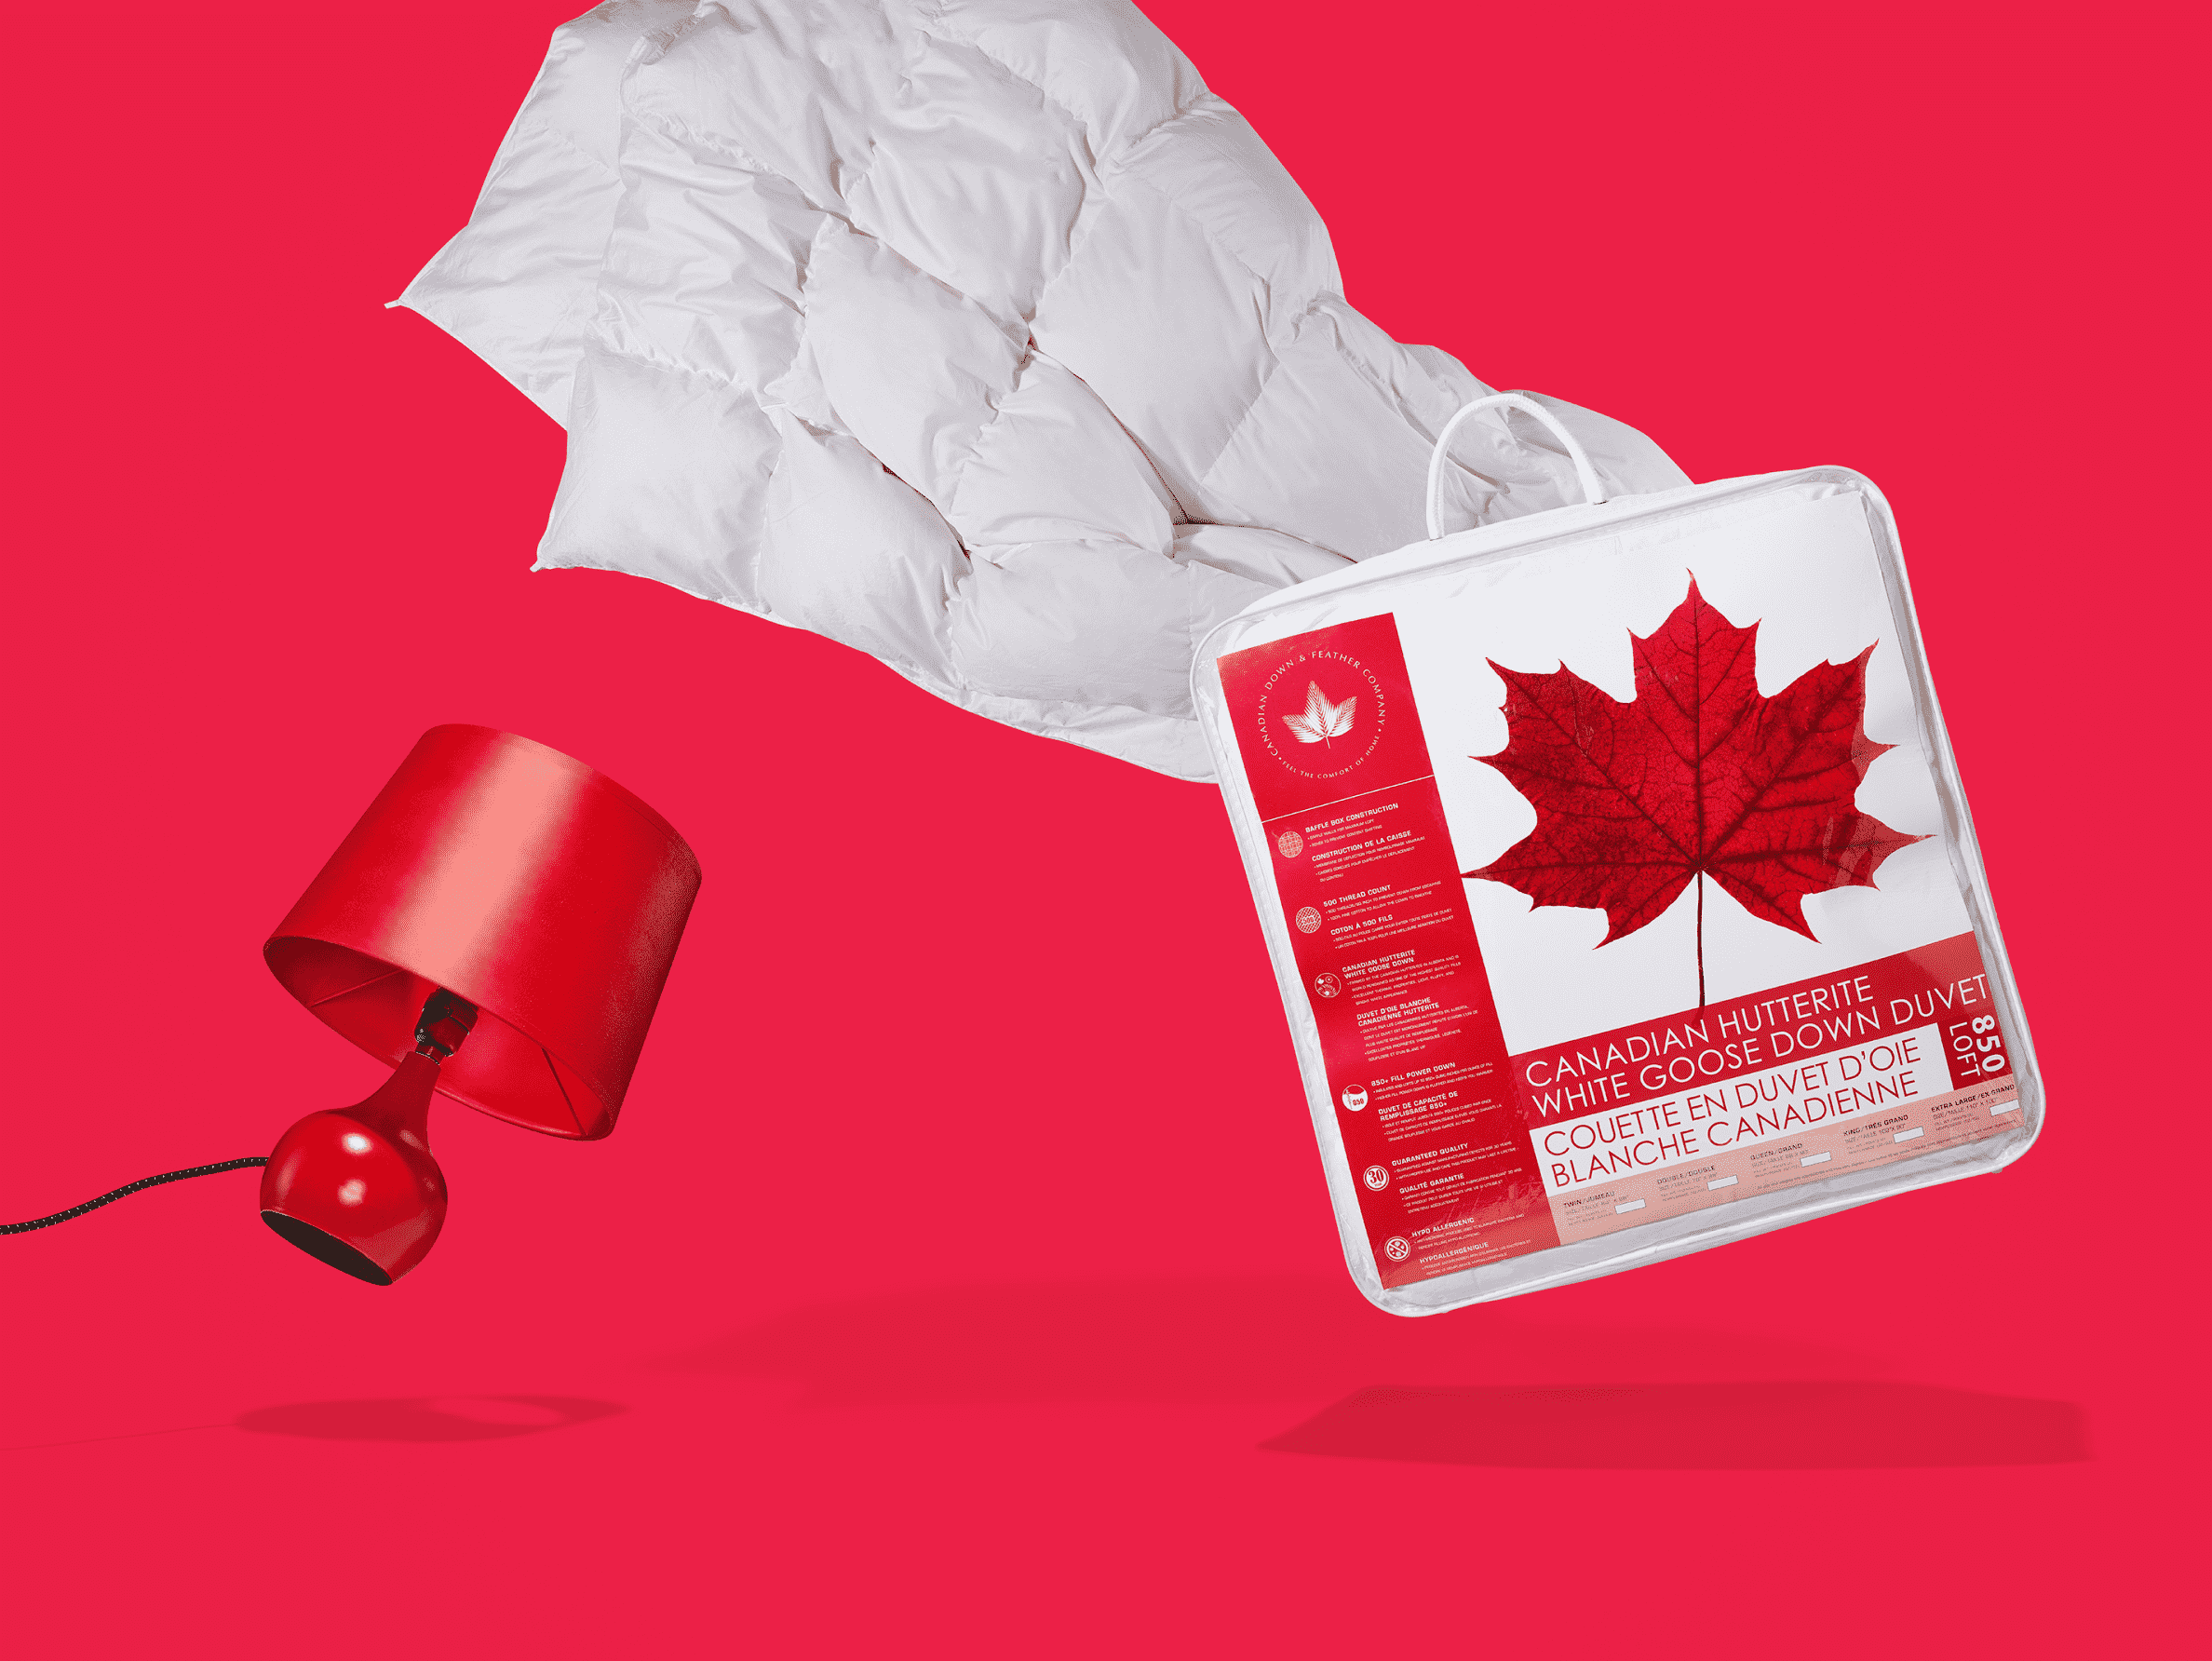 Devant un fond rouge, une couette de duvet d’oie blanche de Canadian Down and Feather emballée, à côté d’une lampe de chevet rouge.